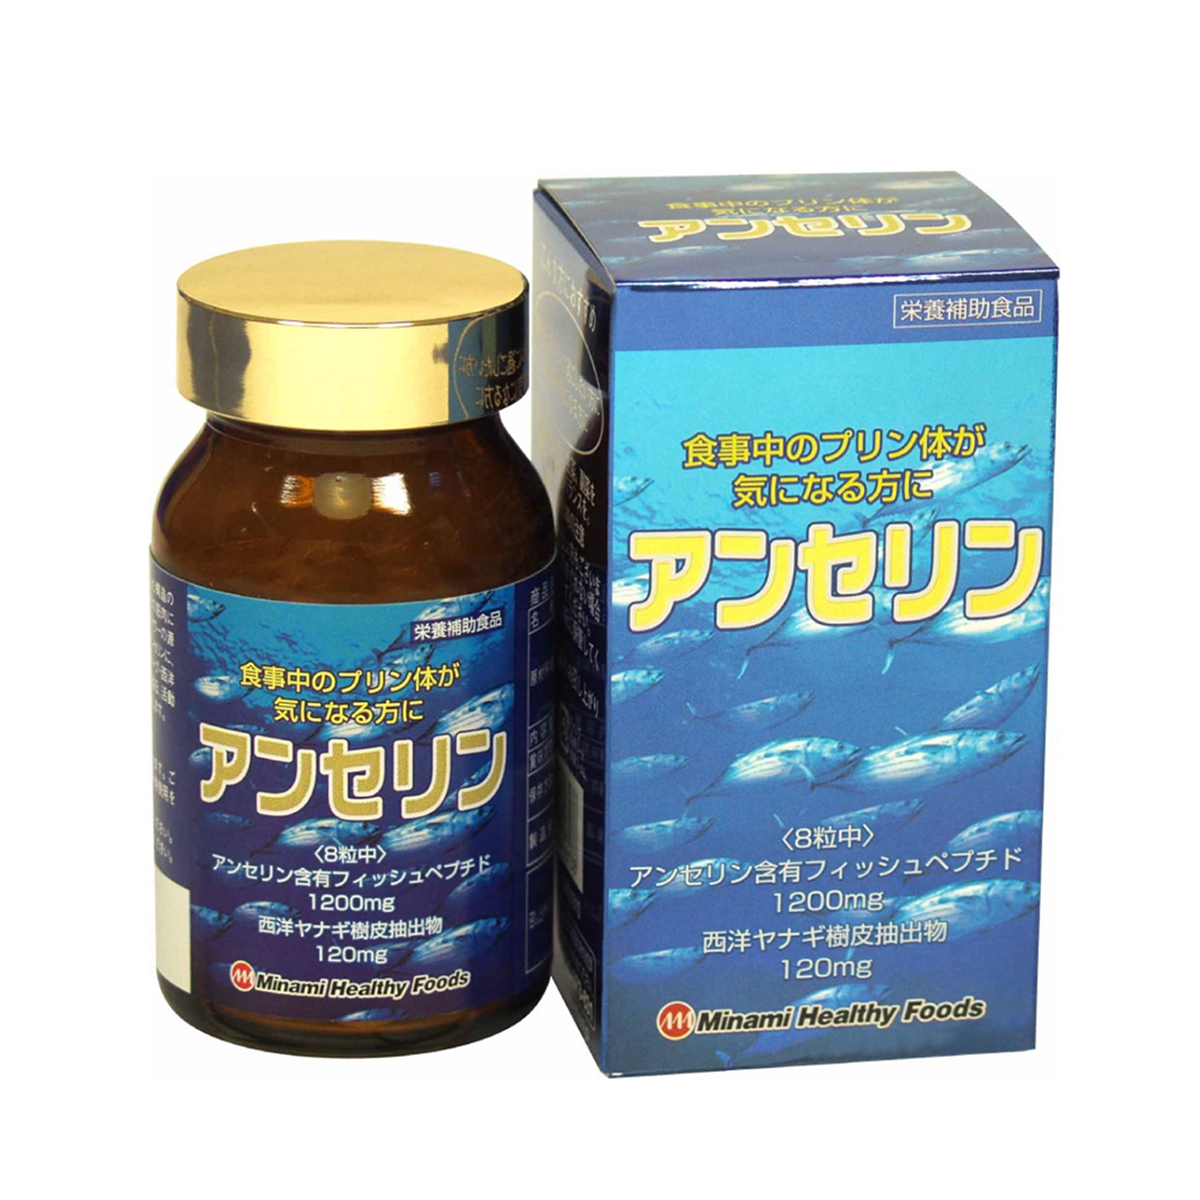 Viên uống hỗ trợ điều trị Gout Nhật Bản Anserine Minami